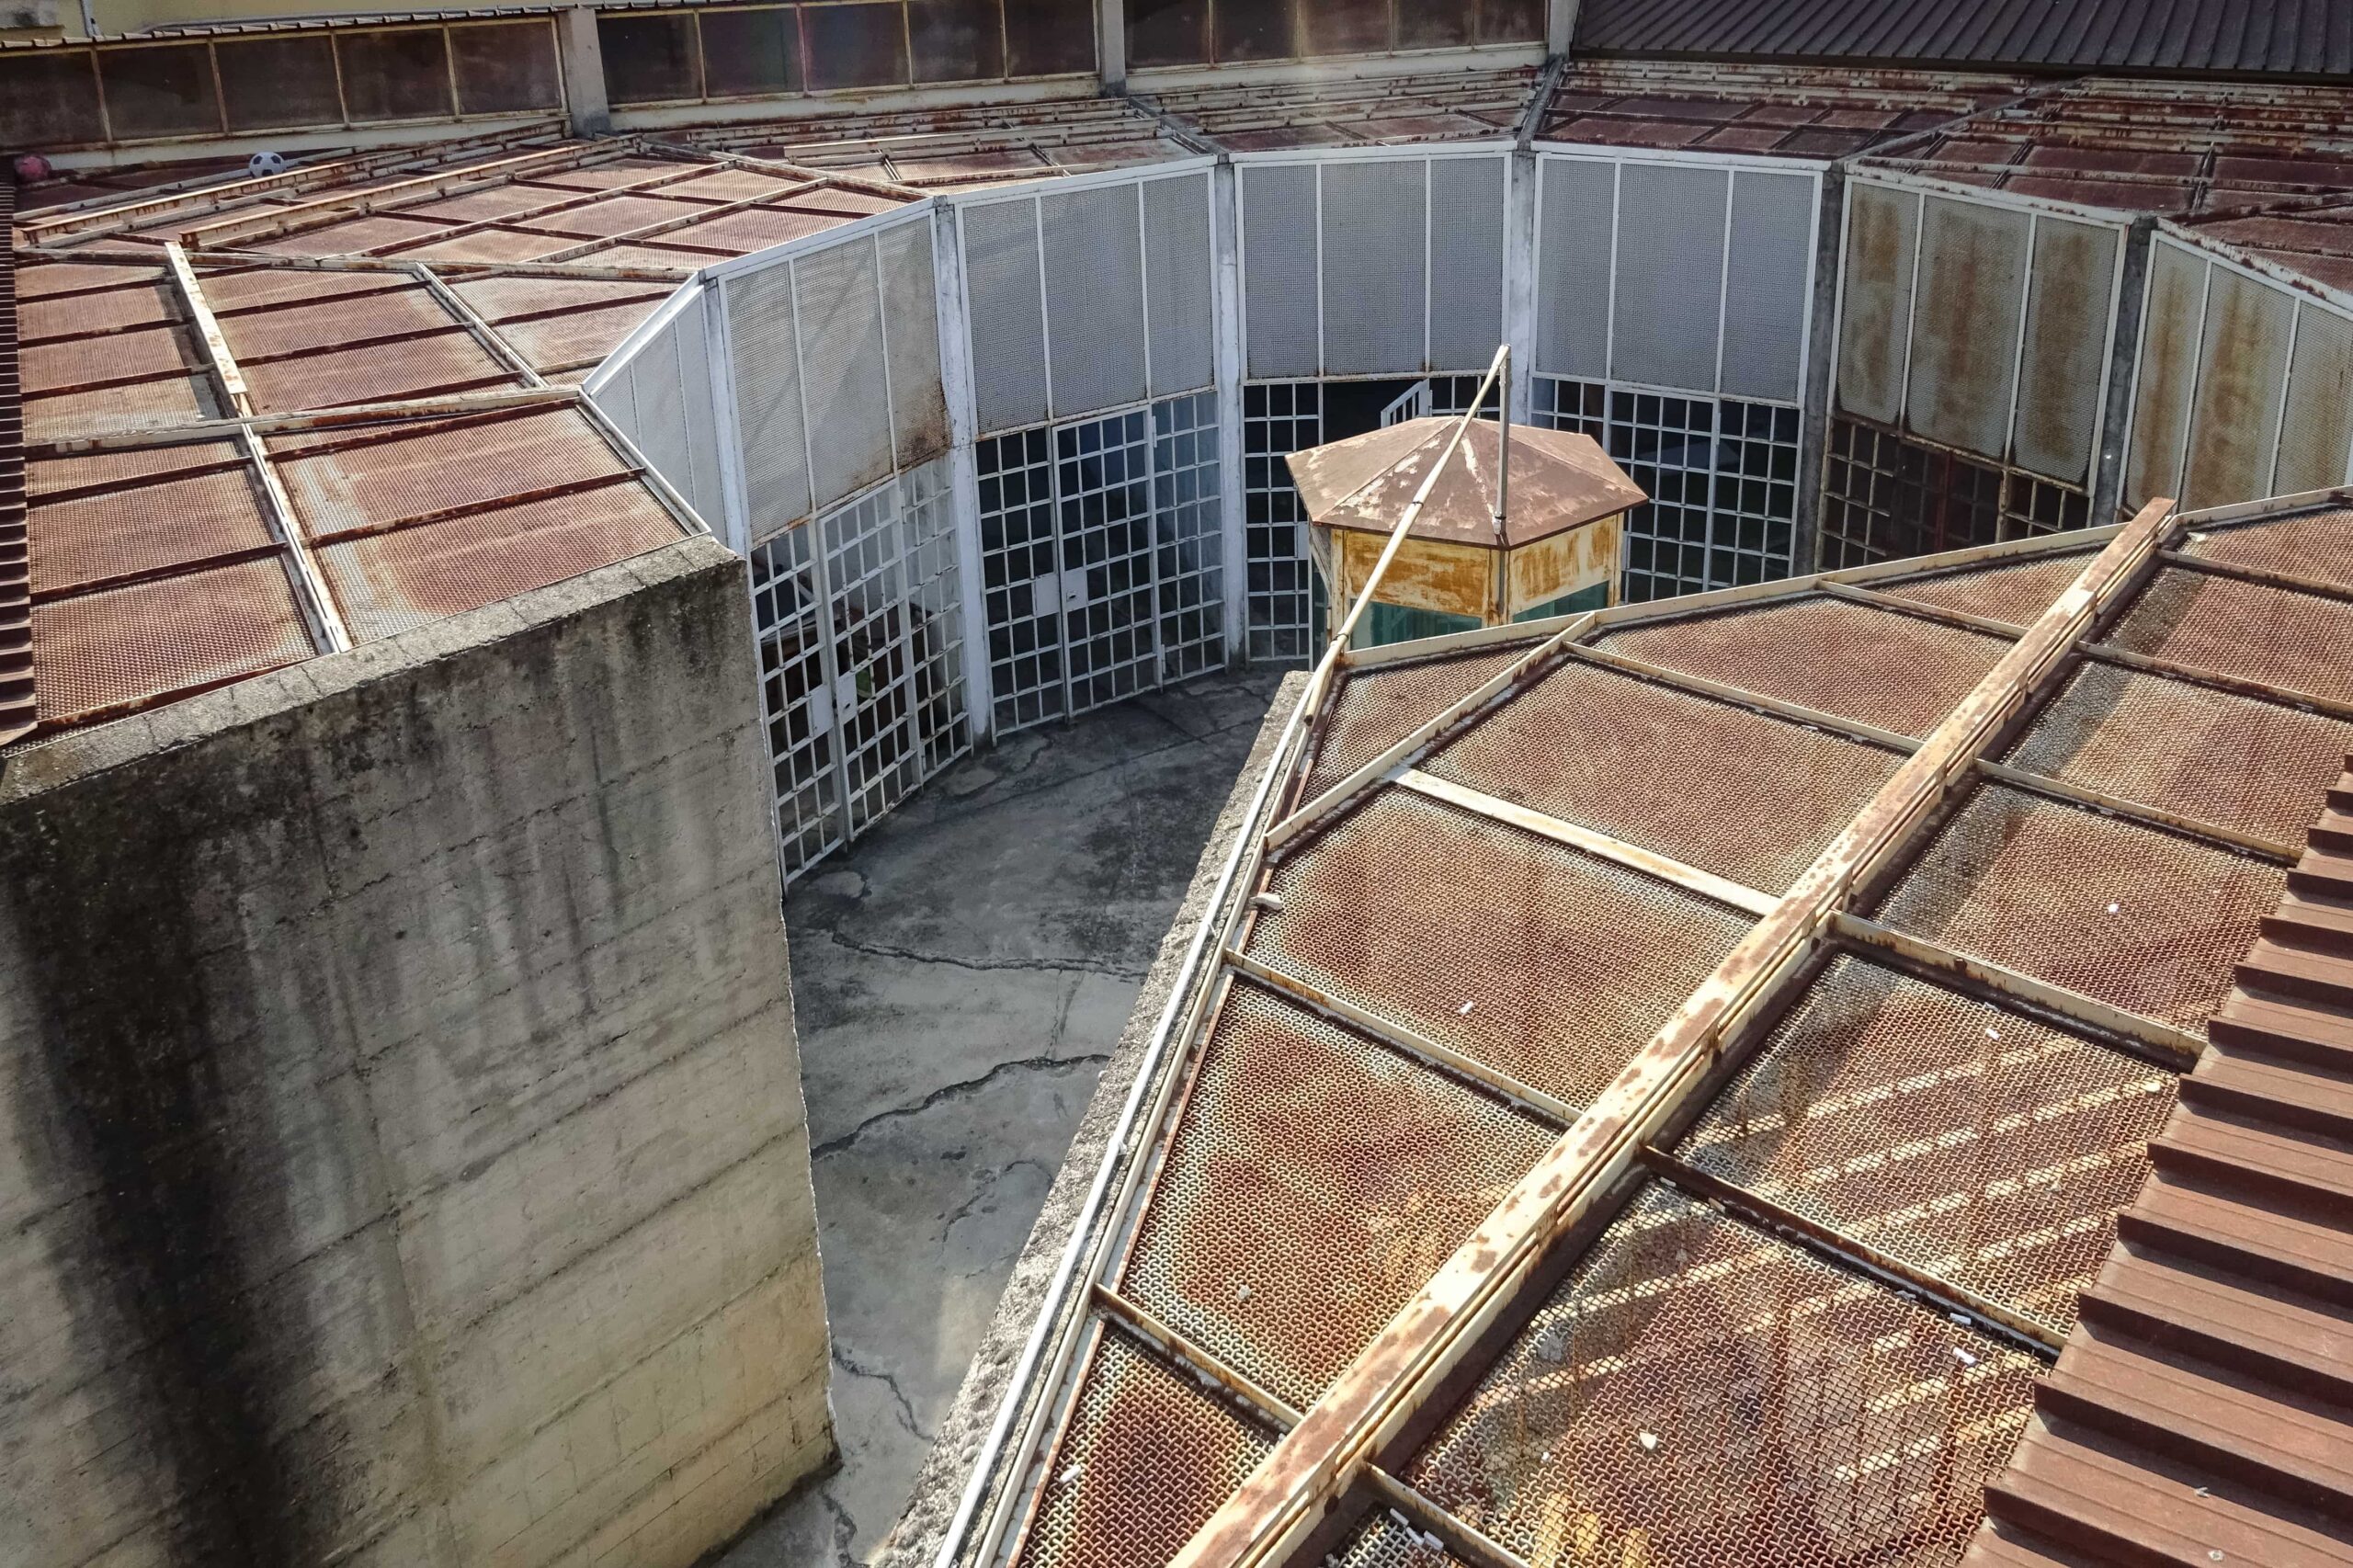 Un carcere visto dall'alto, nella foto si vedono delle celle all'aperto disposte a cerchio e in mezzo una torretta esagonale